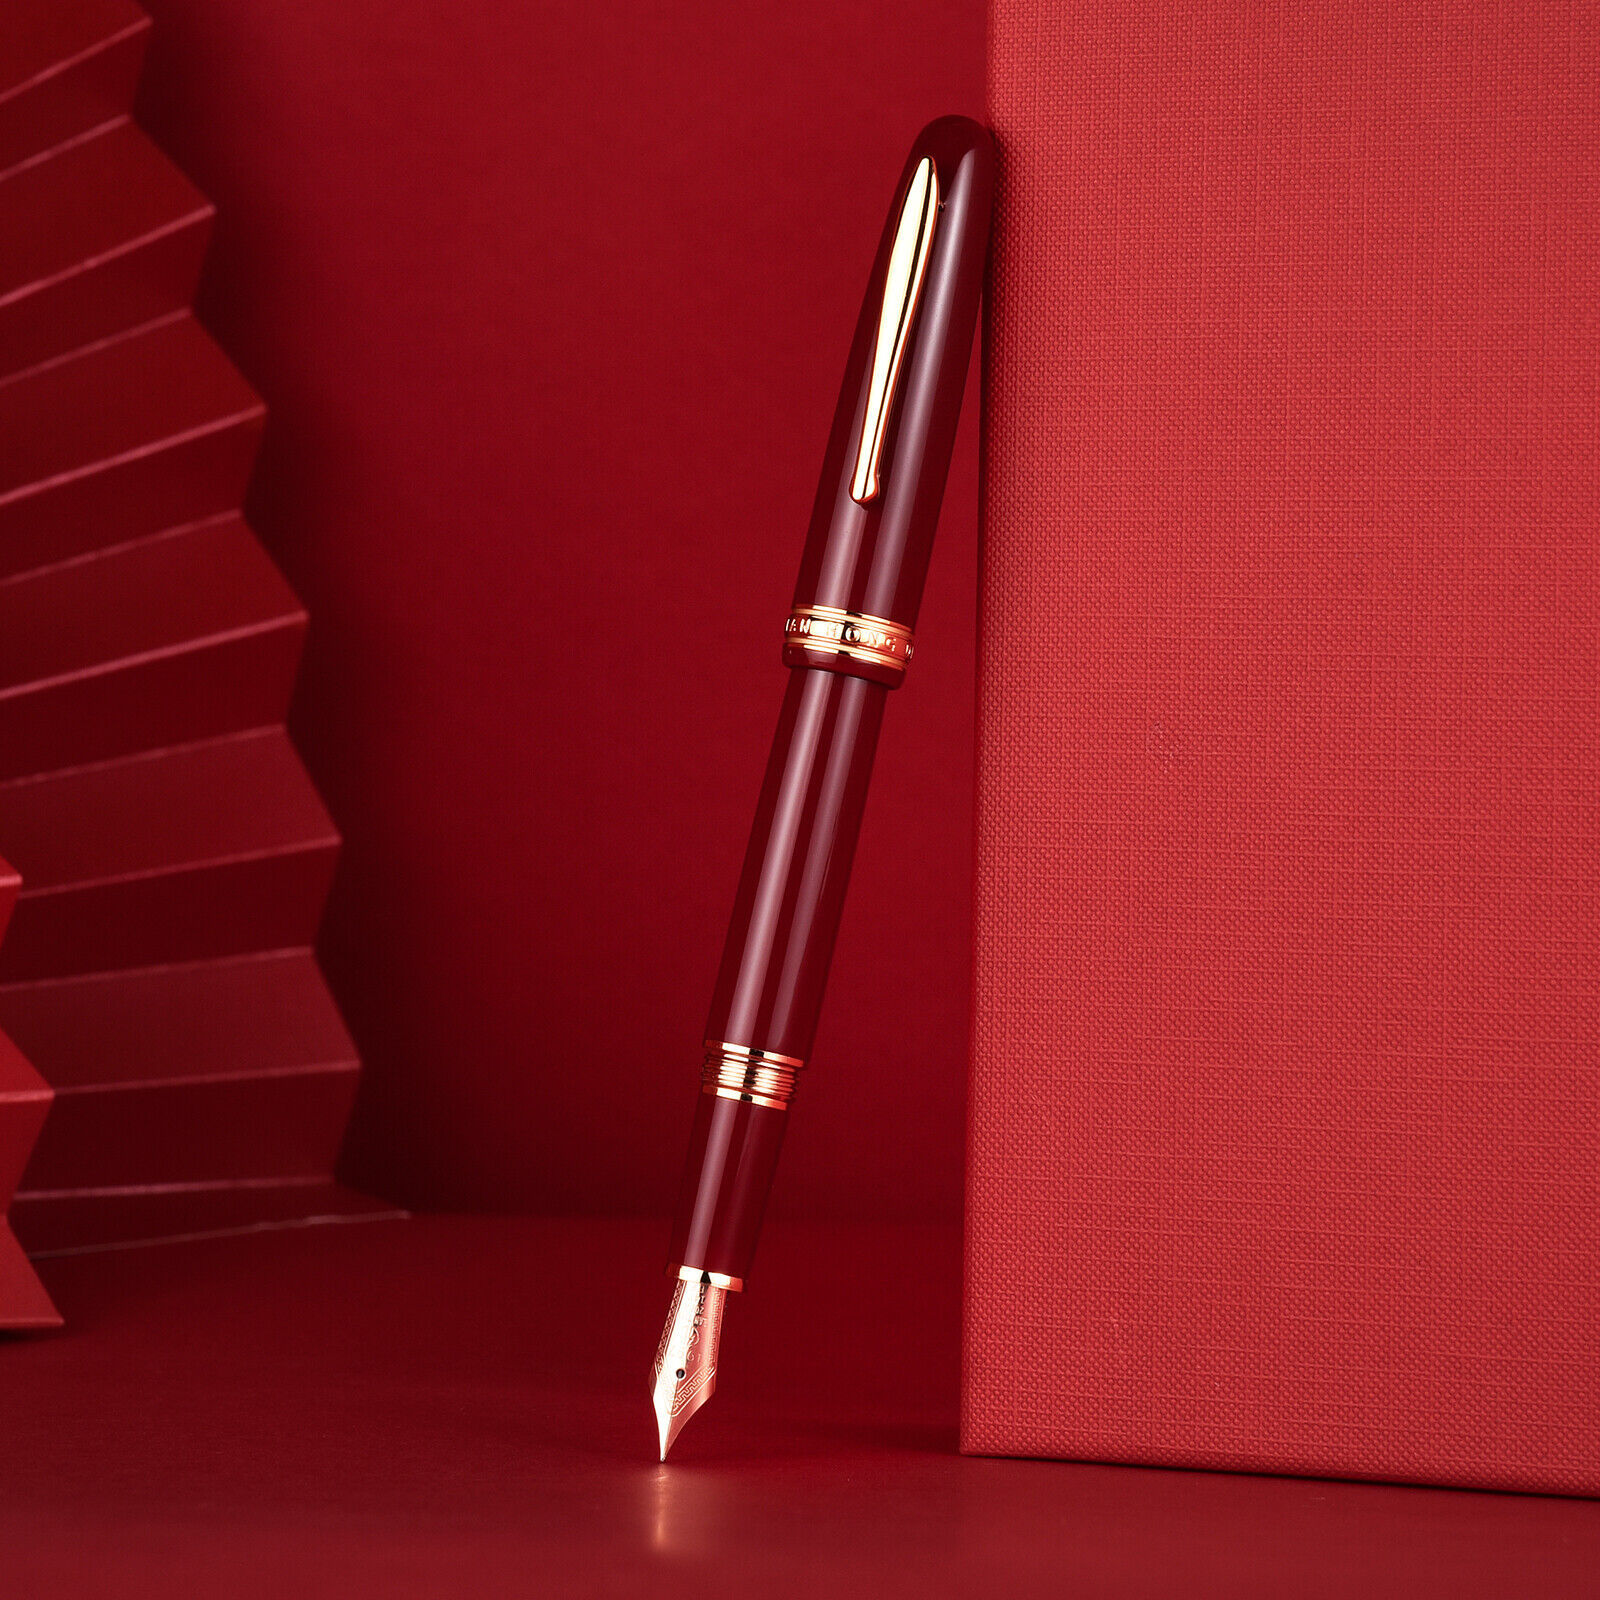 Hongdian 1841 Red / Black Resin Fountain Pen, Iridium EF/ F Nib #32 Classic Pen